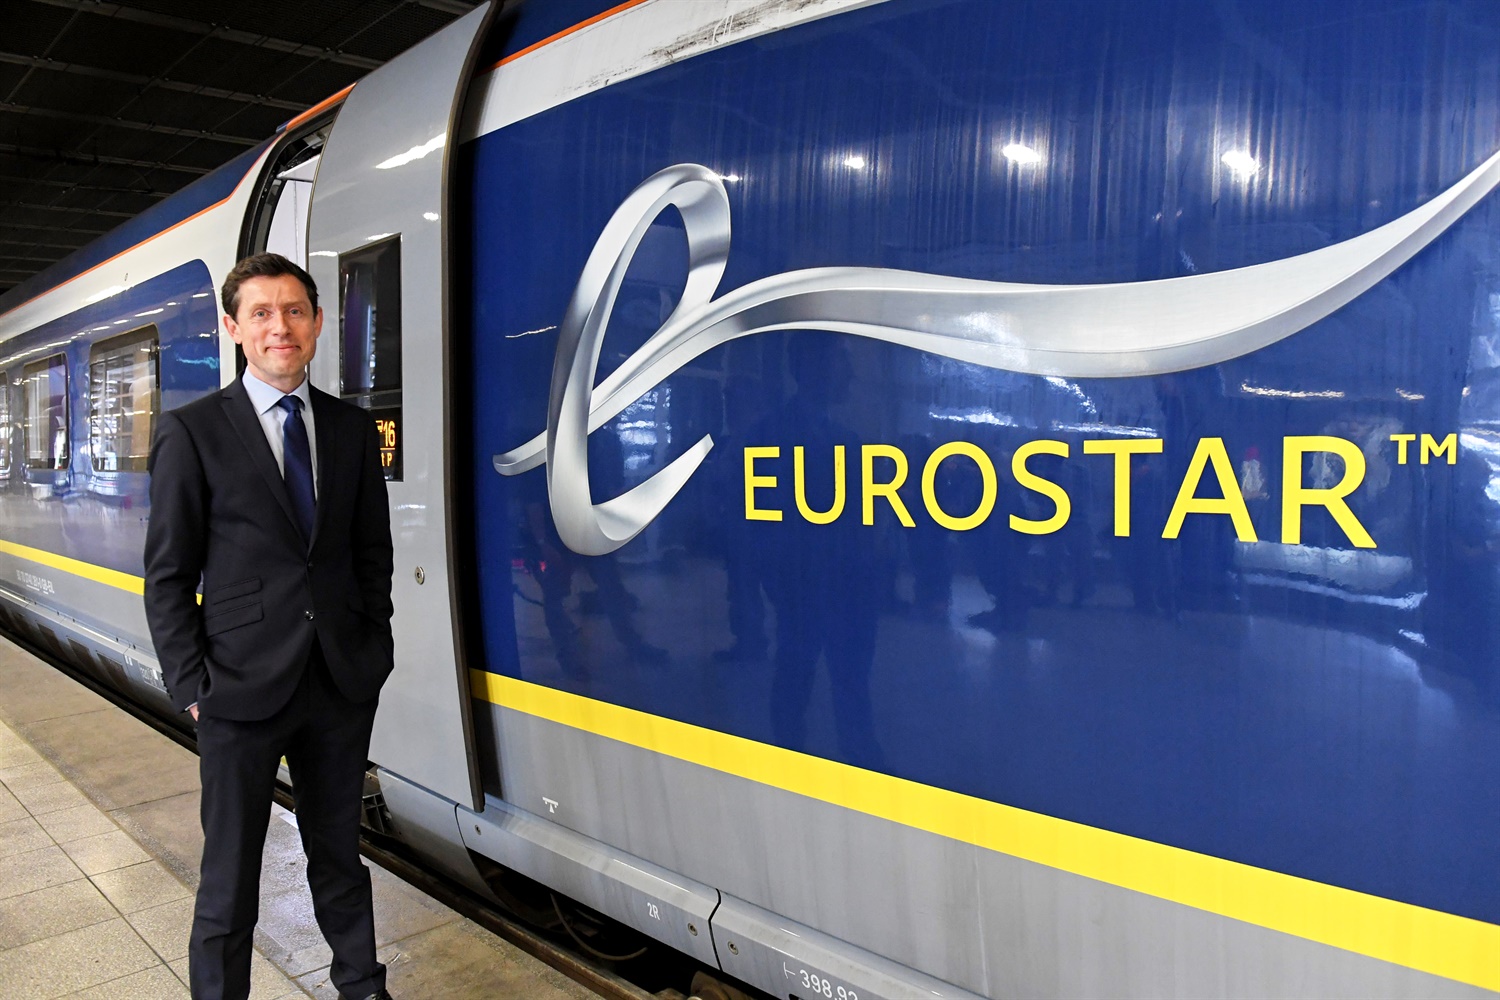 Afbeeldingsresultaat voor Eurostar london